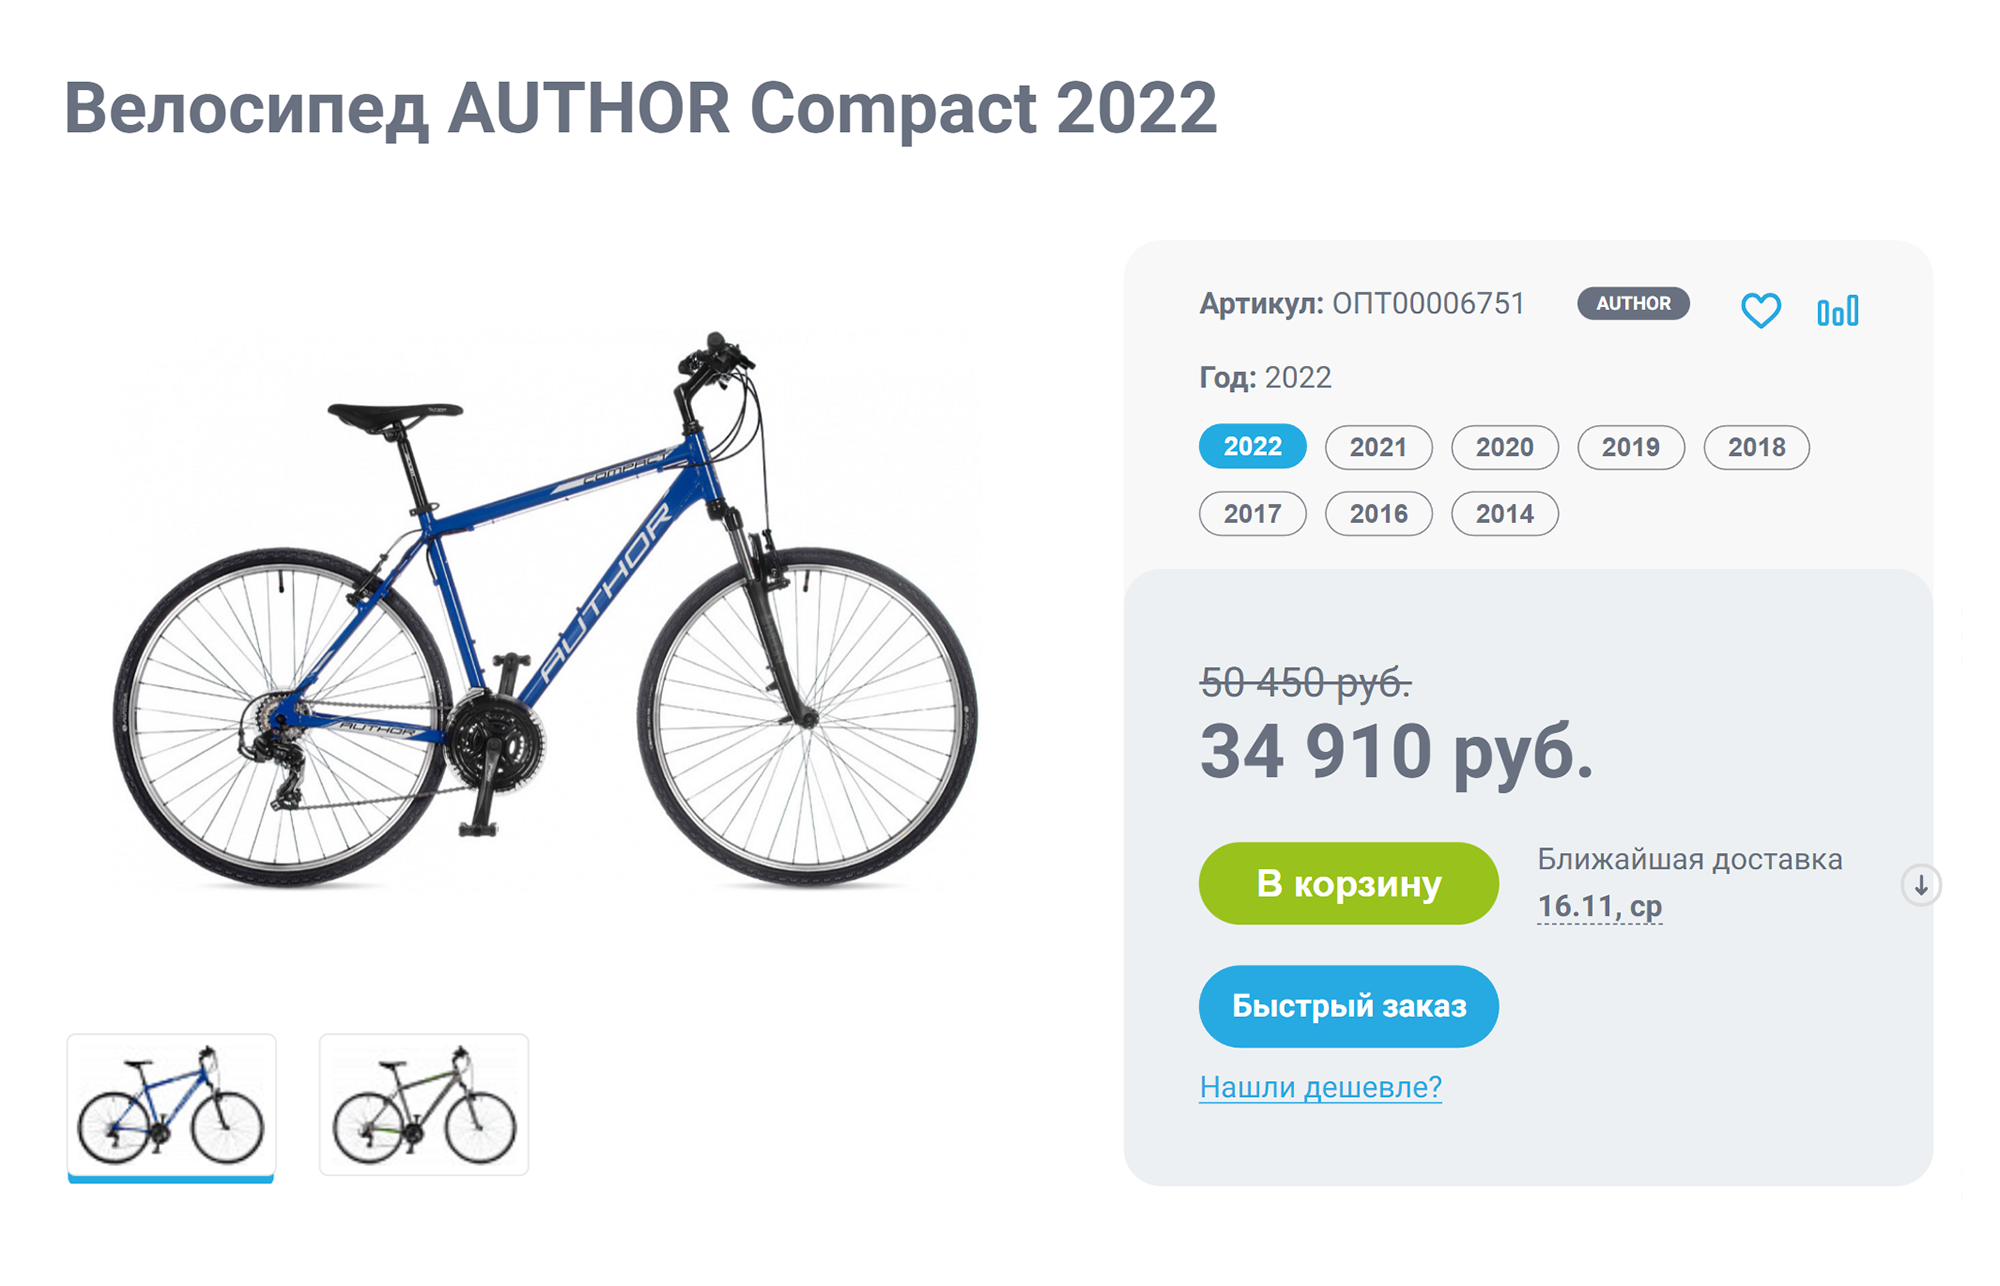 Одна и та же модель разных годов выпуска может стоить по⁠-⁠разному. Например, велосипед Author Classic 2022 года стоит 50 290 ₽. Источник: velodrive.ru